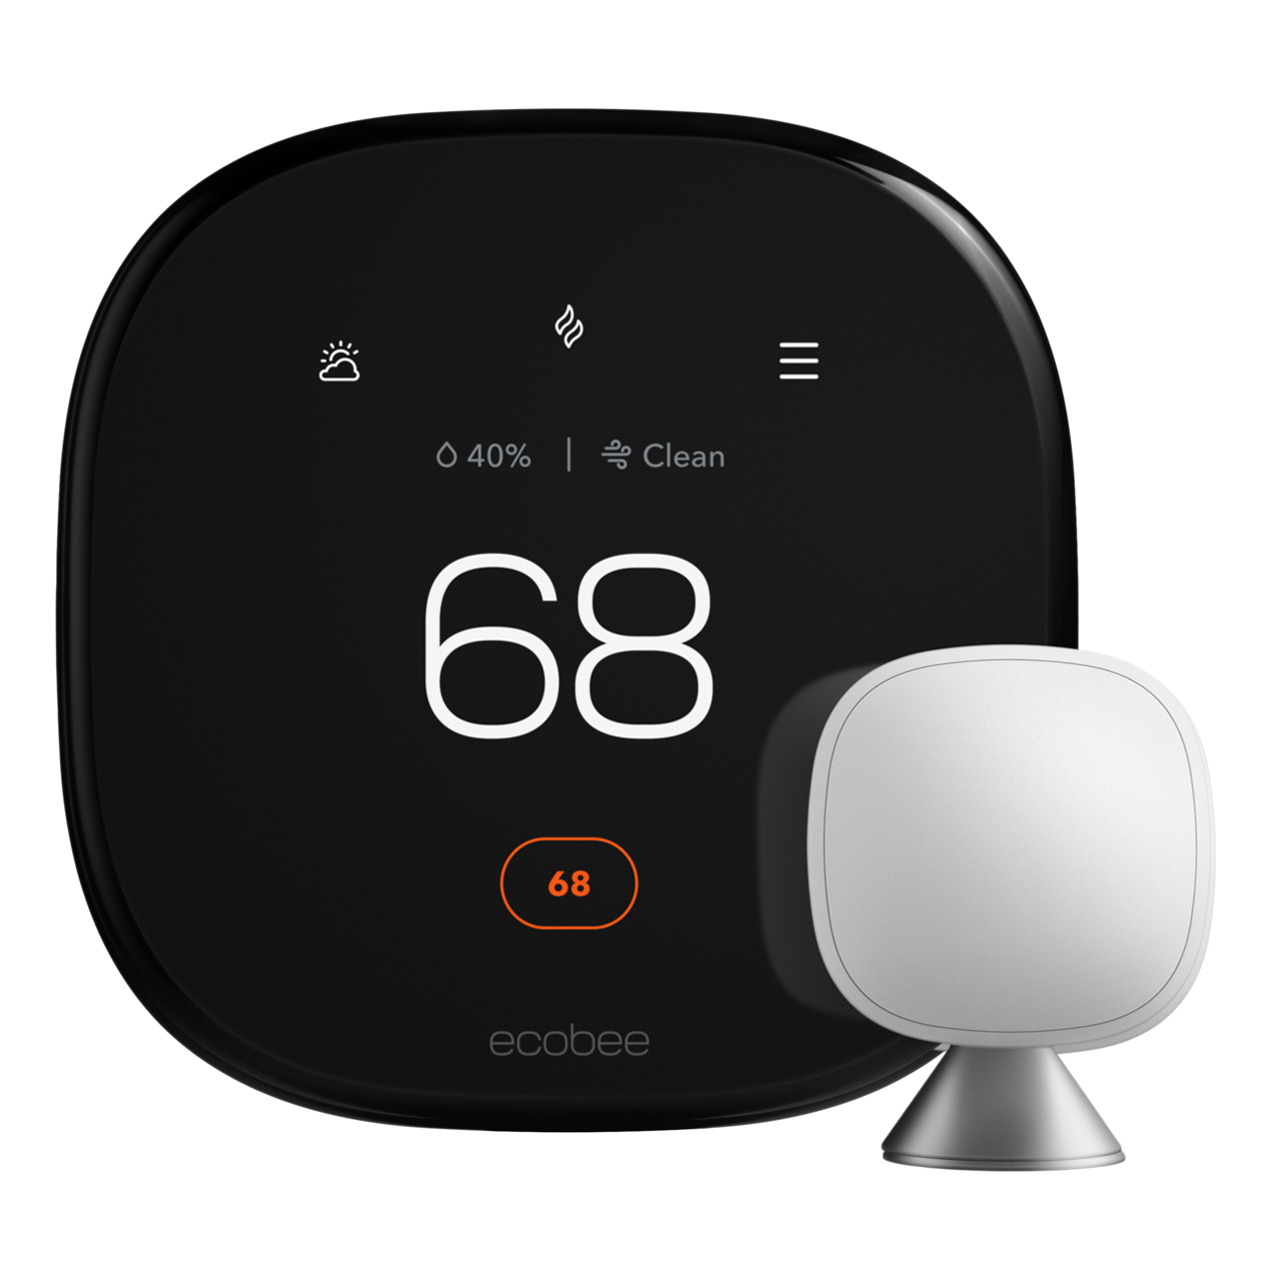 ecobee Smart Thermostat Premium set to 68° heat